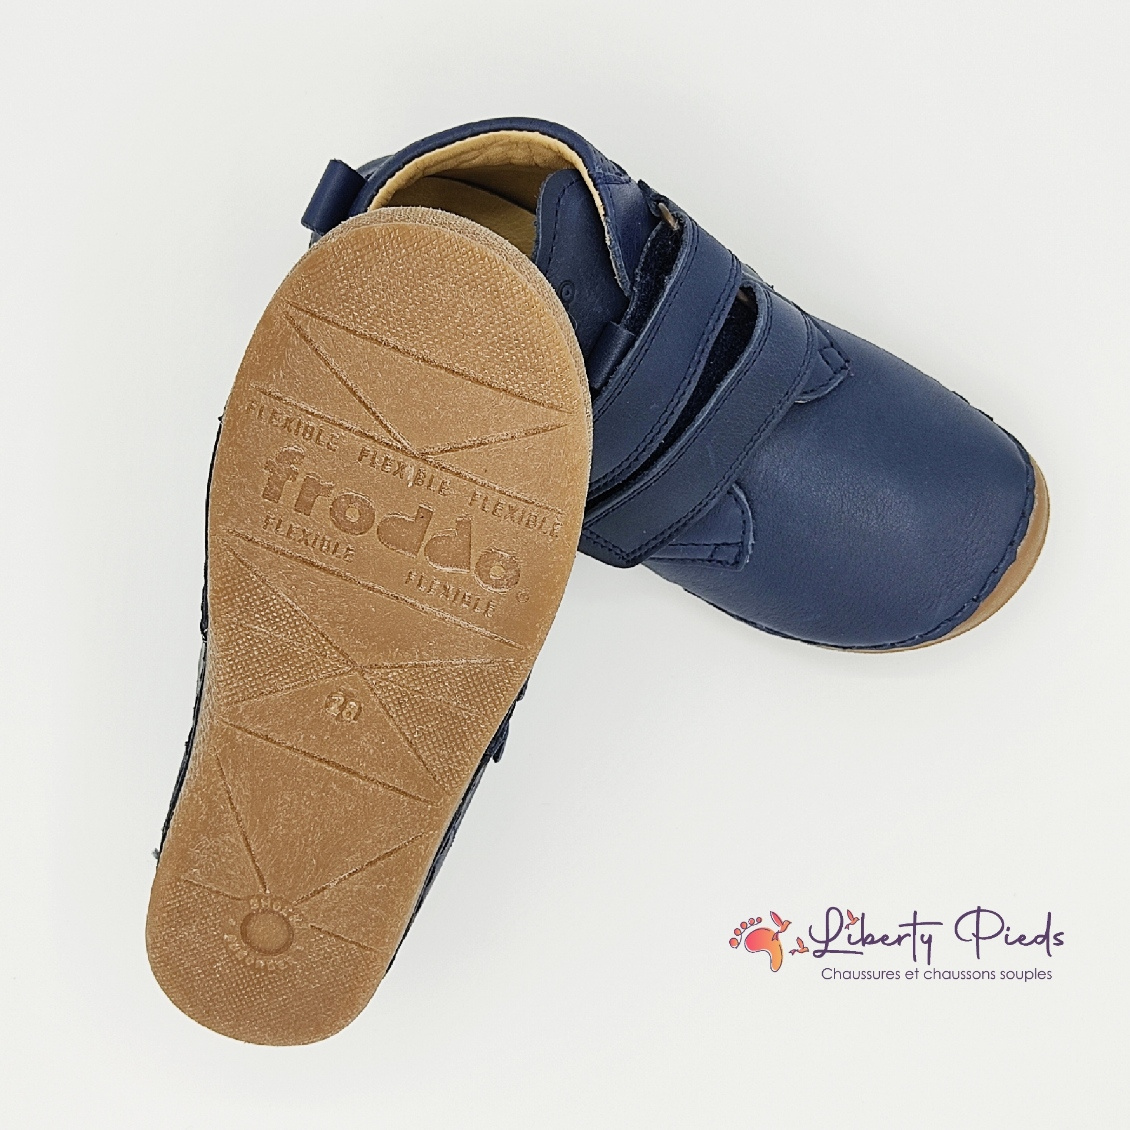 chaussures en cuir froddo paix velcro dark blue sur la boutique liberty pieds (6)